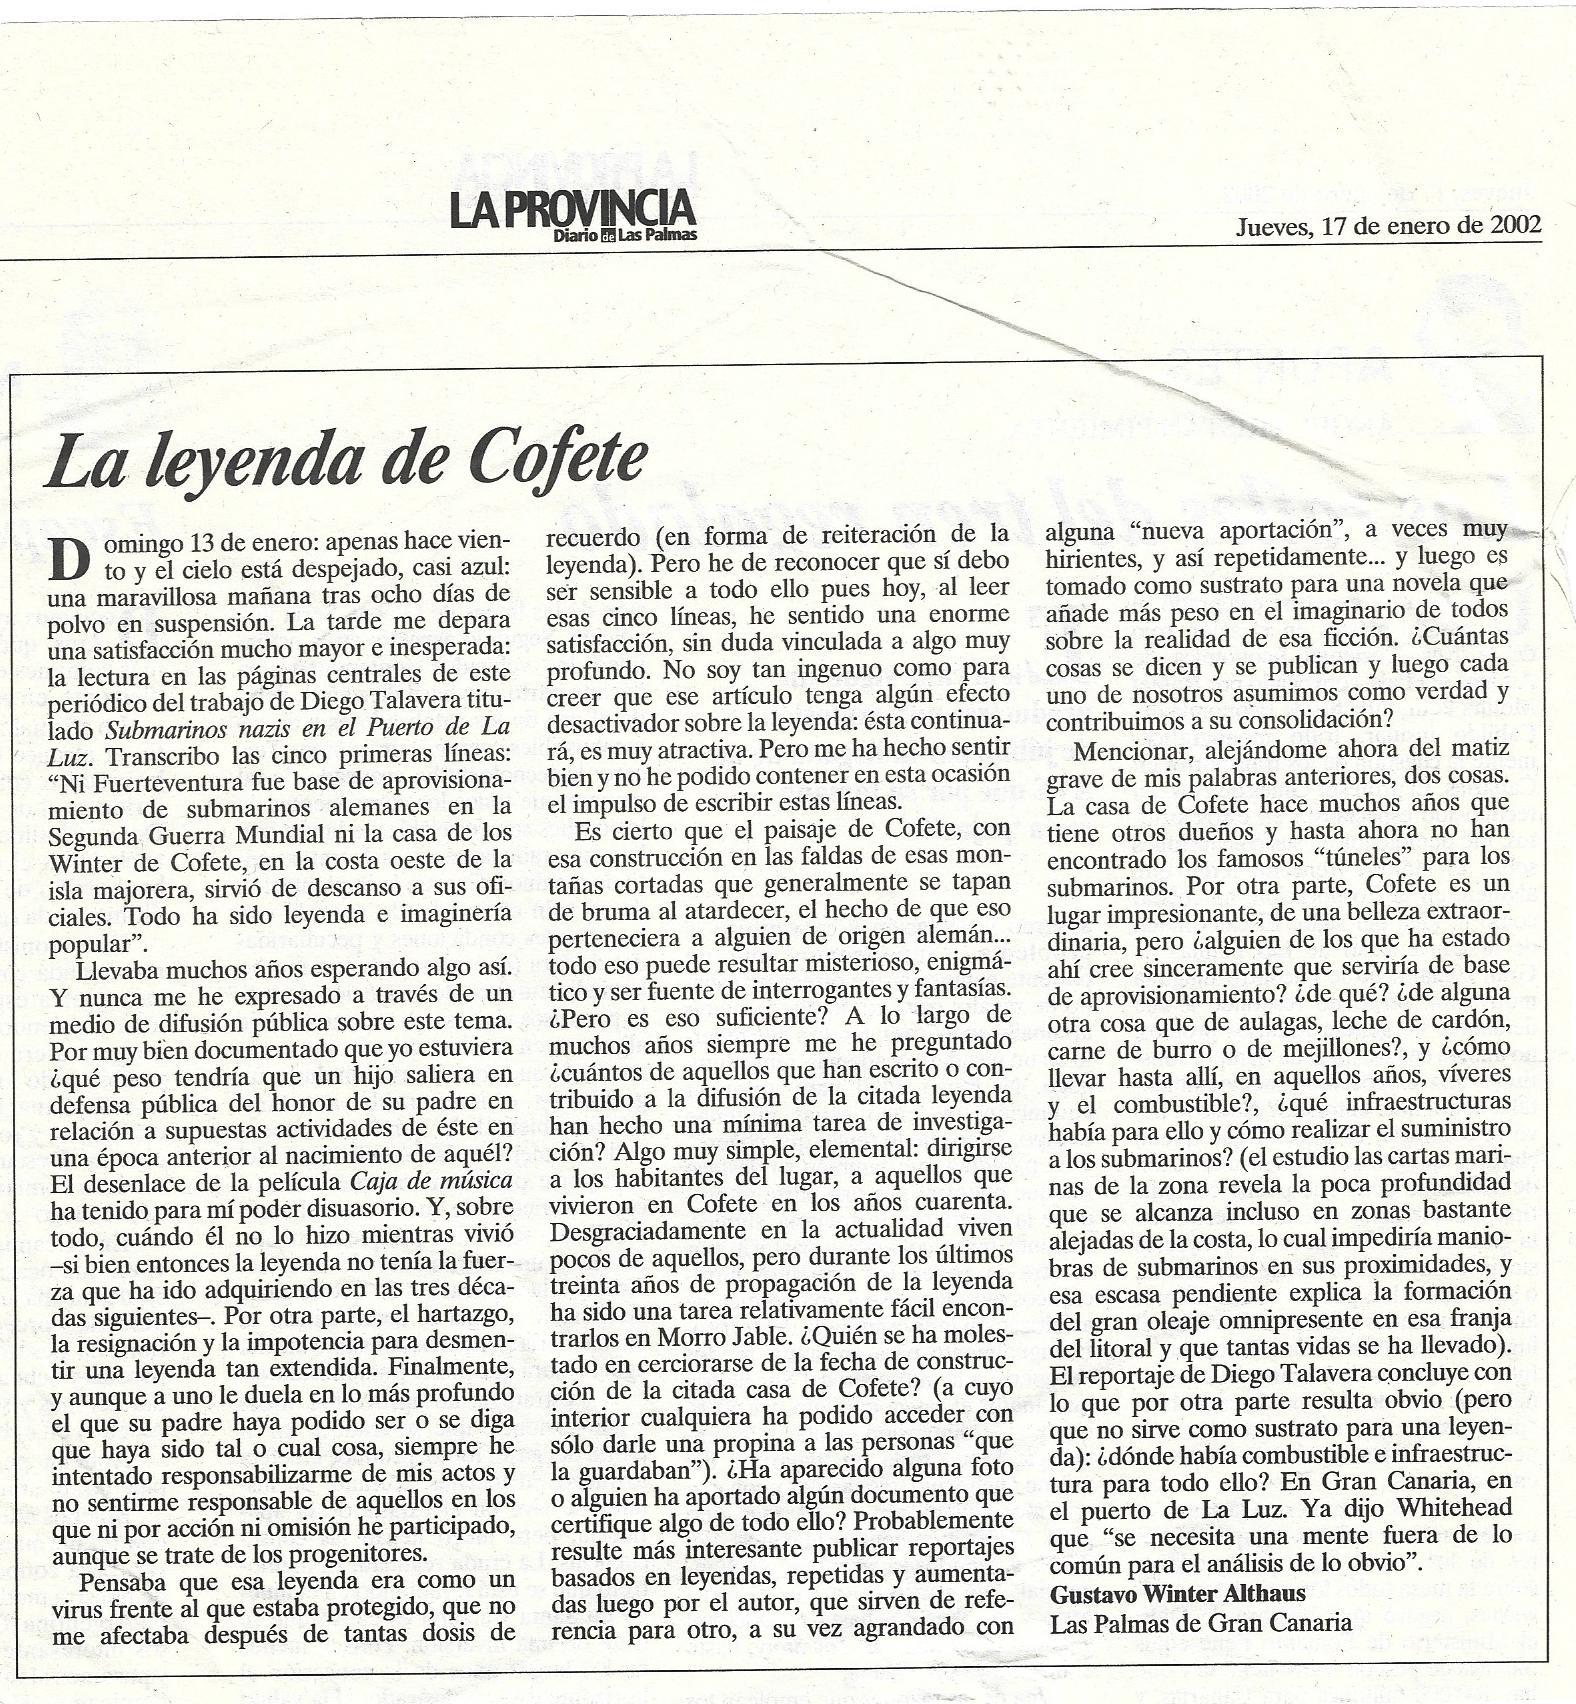 La leyenda de Cofete - LA PROVINCIA - Diario de Las Palmas